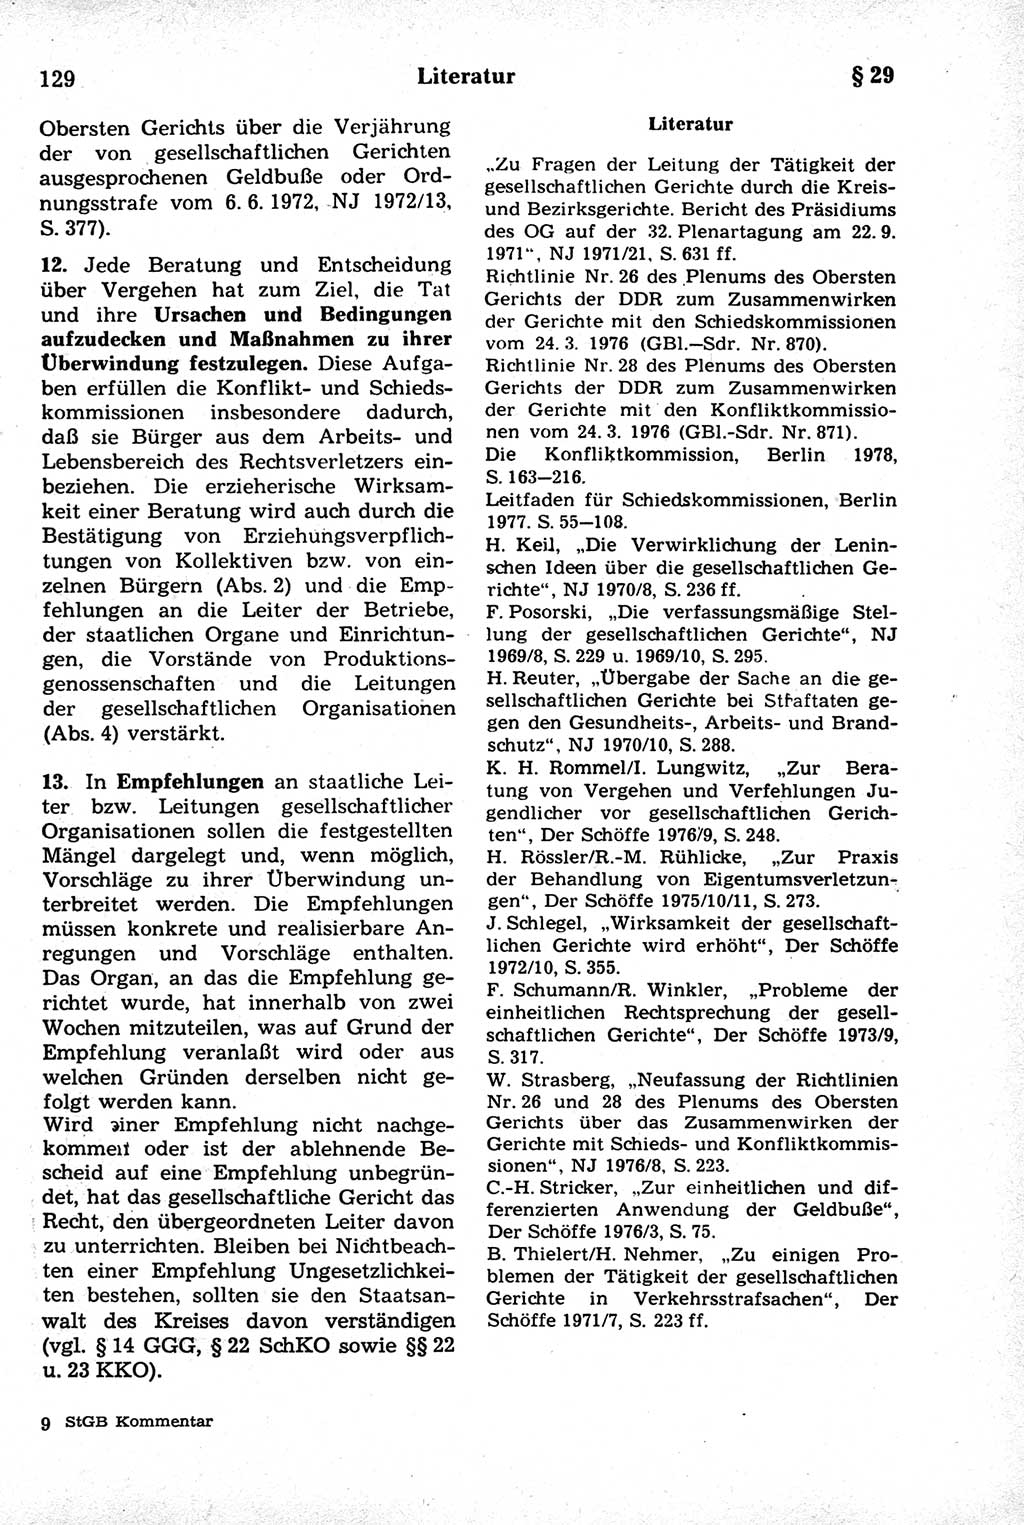 Strafrecht der Deutschen Demokratischen Republik (DDR), Kommentar zum Strafgesetzbuch (StGB) 1981, Seite 129 (Strafr. DDR Komm. StGB 1981, S. 129)